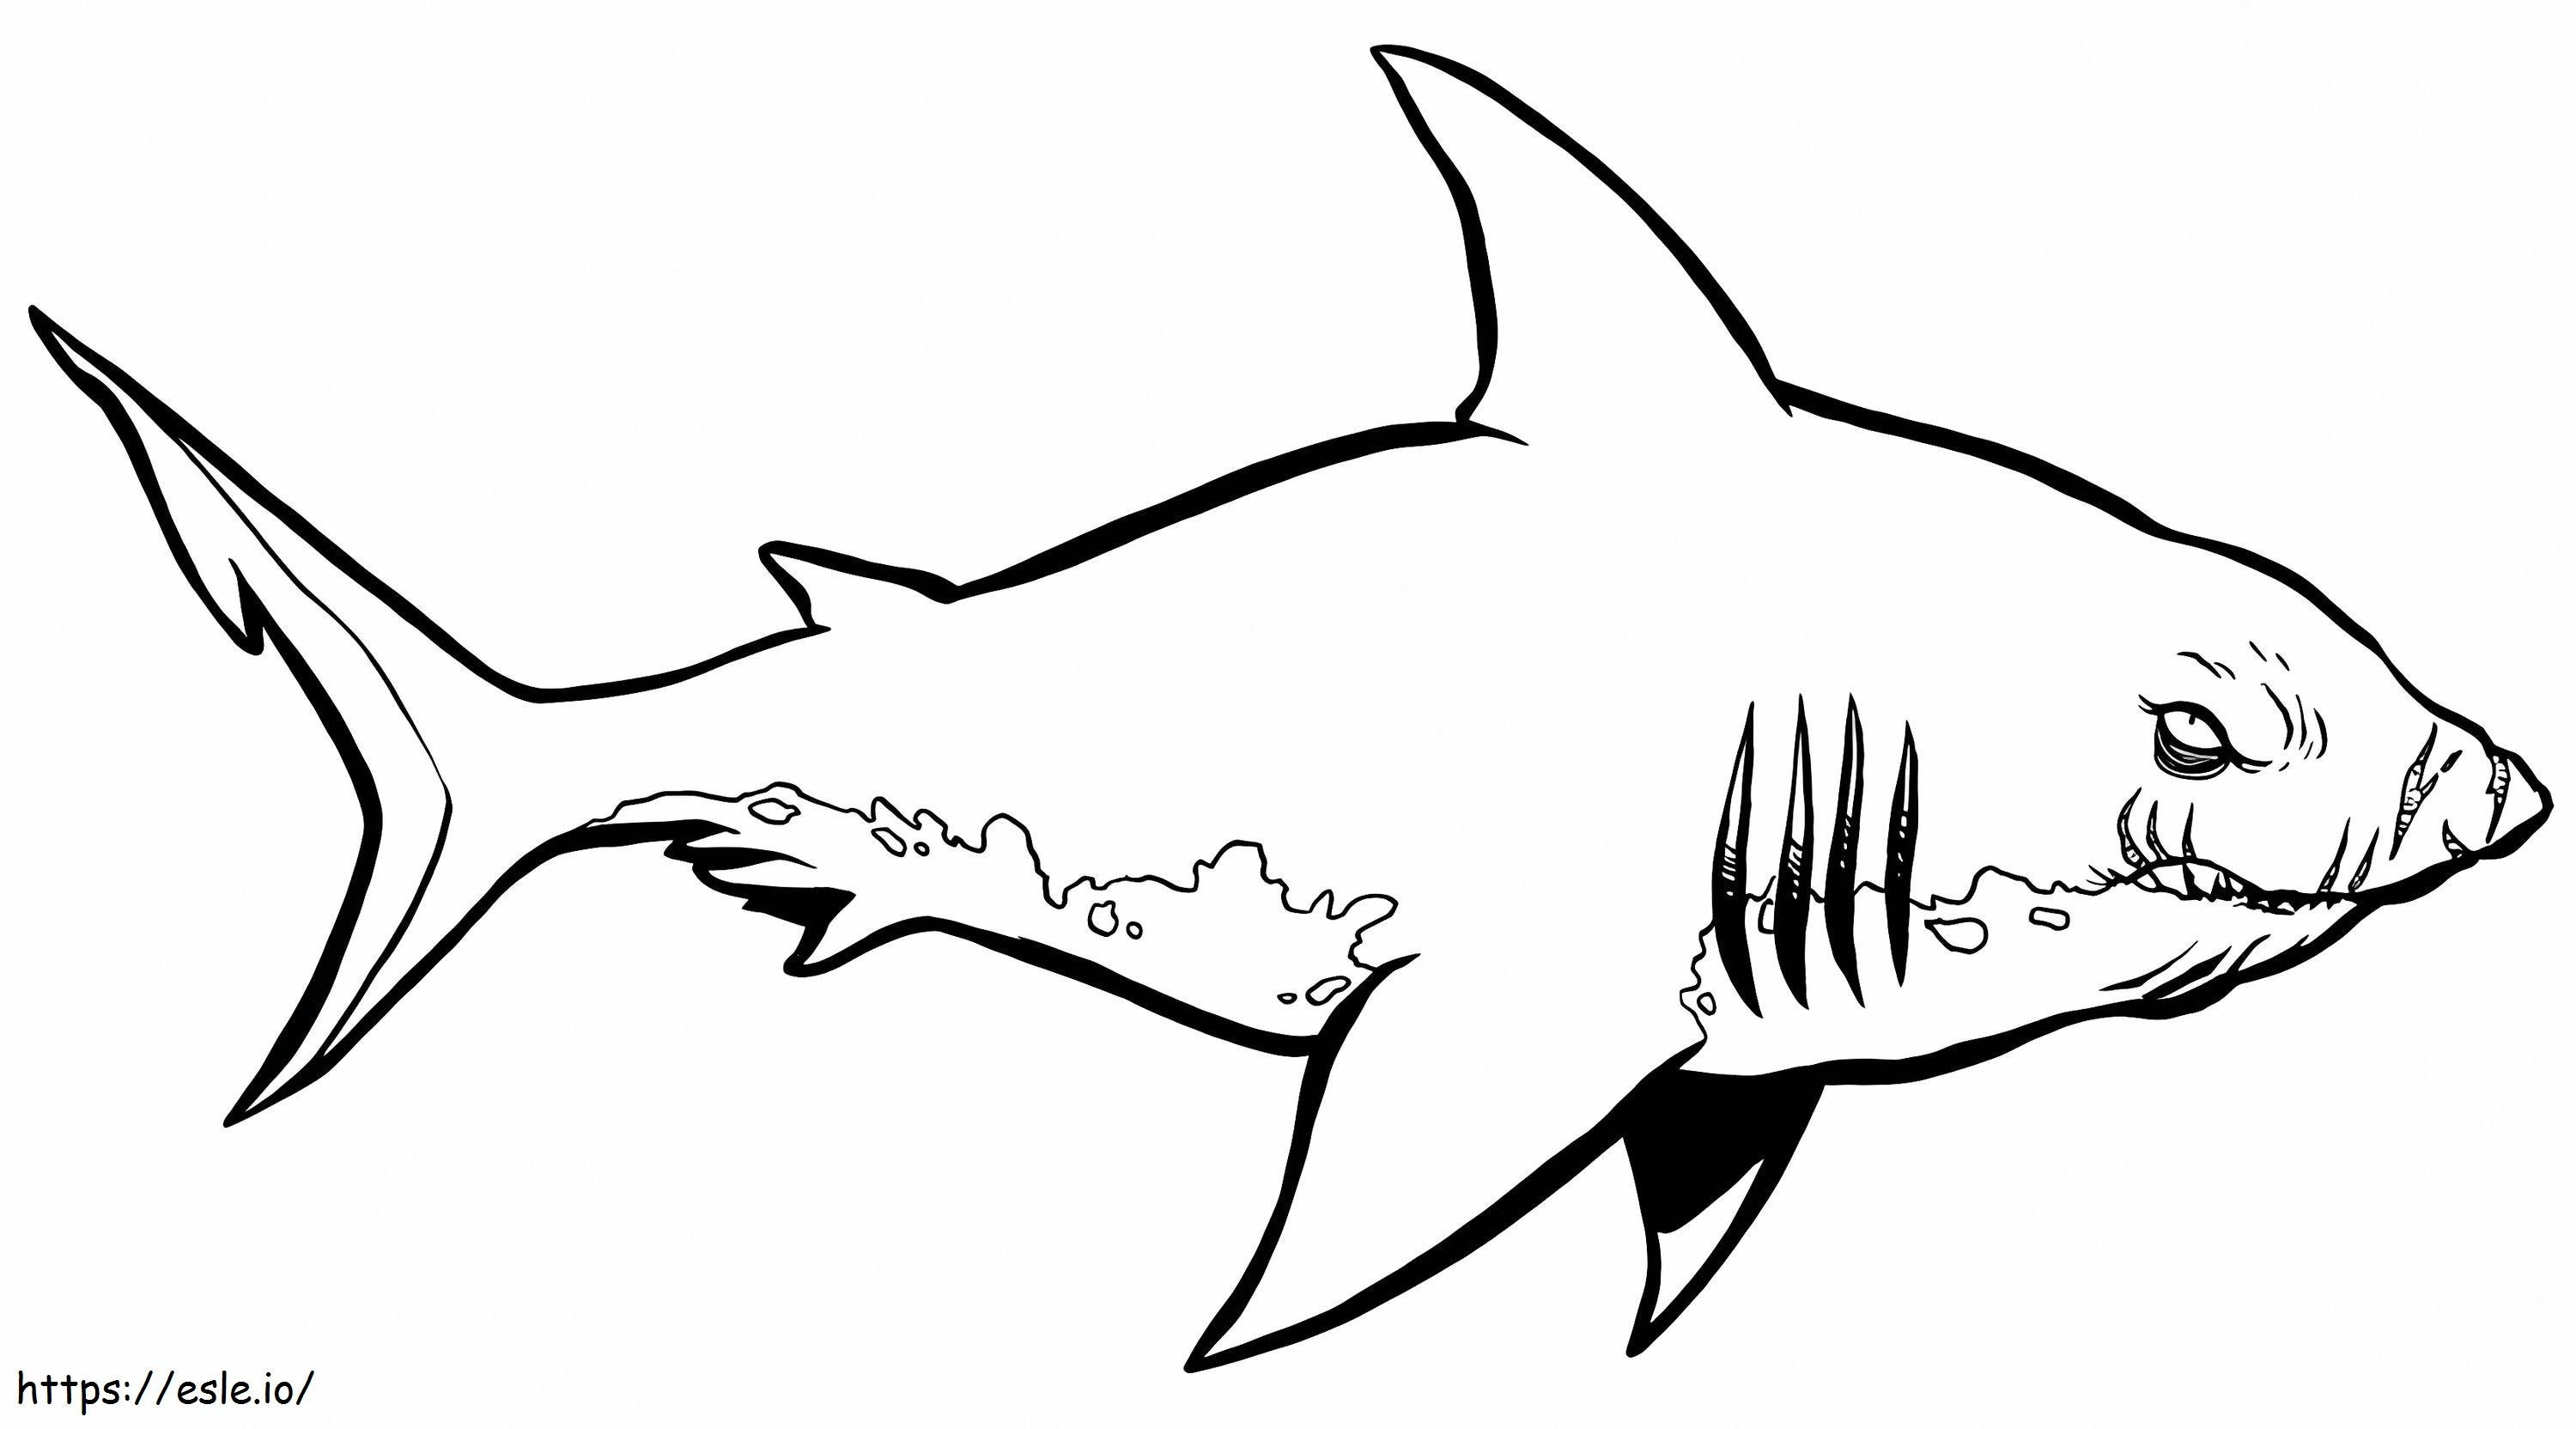 1541379158_Köpekbalığı Resimleri Renkli Köpekbalığı Boyama Kitabı Çekiç Kafalı Köpekbalığı Clipart Boyama Kitabı Kalem Kuzgunlar boyama